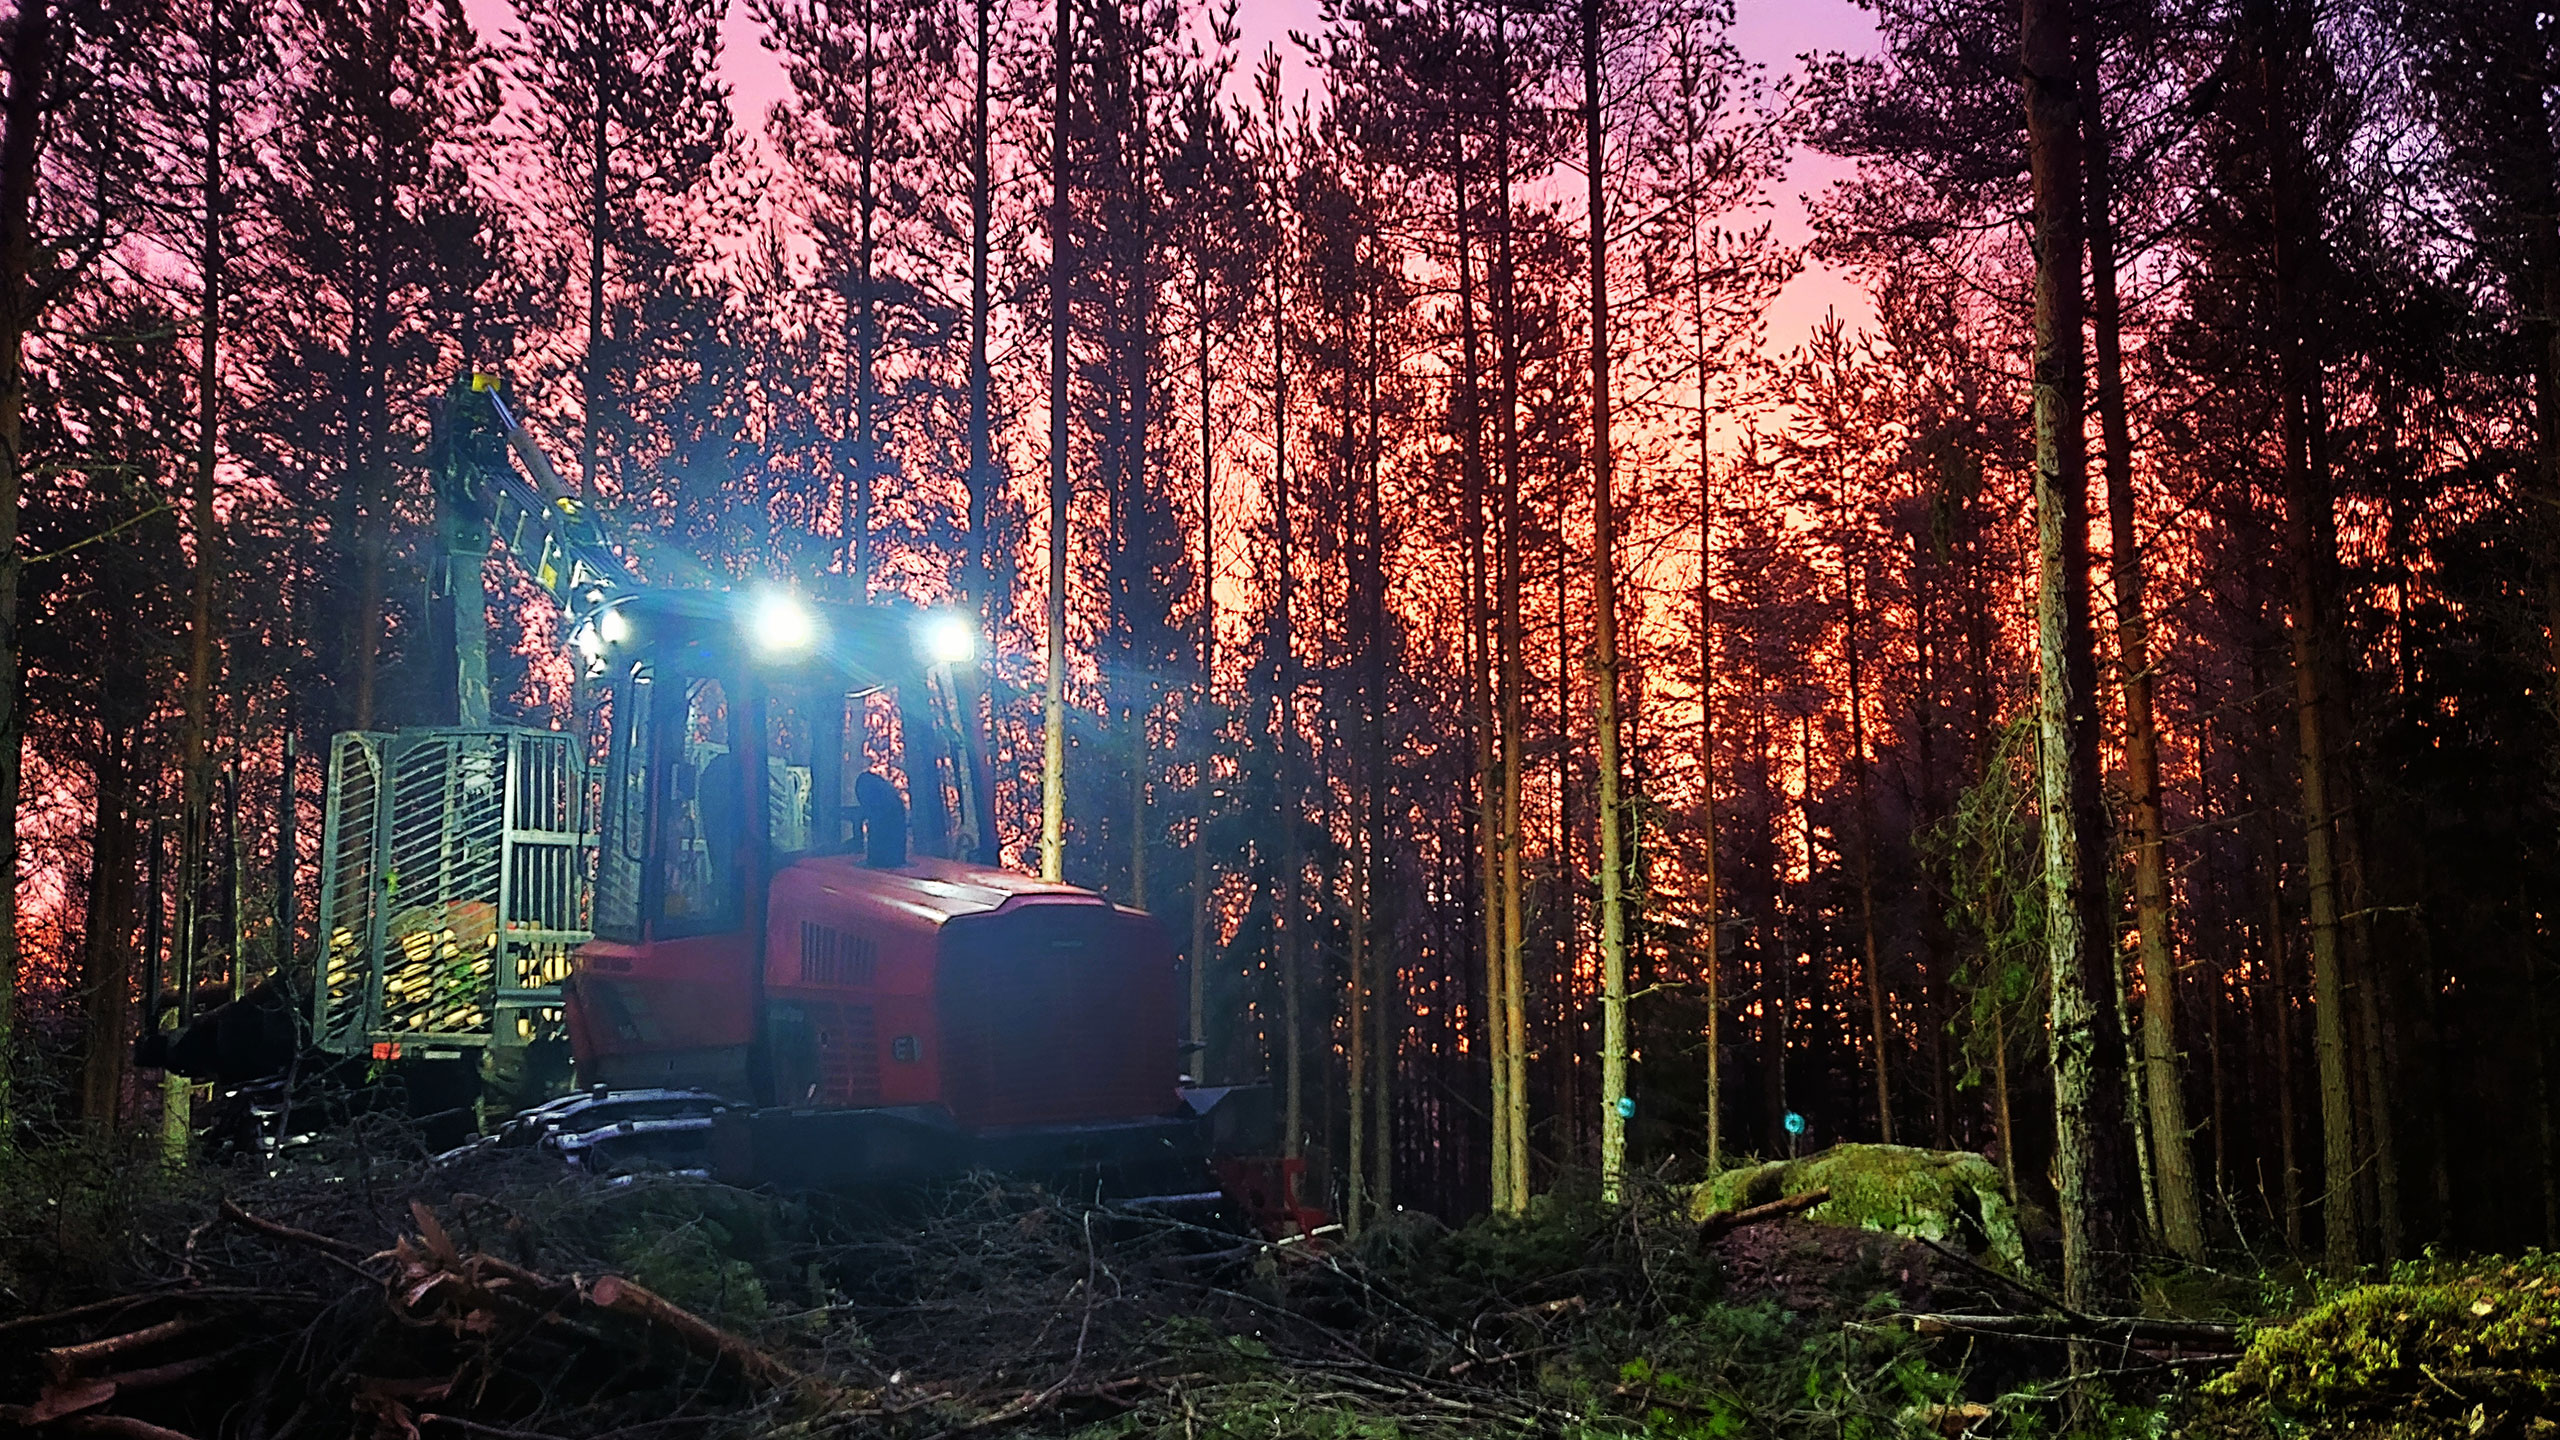 Komatsu Forestin valokuvauskilpailu tammikuu 2020, 1. palkinto: Matti Raunio